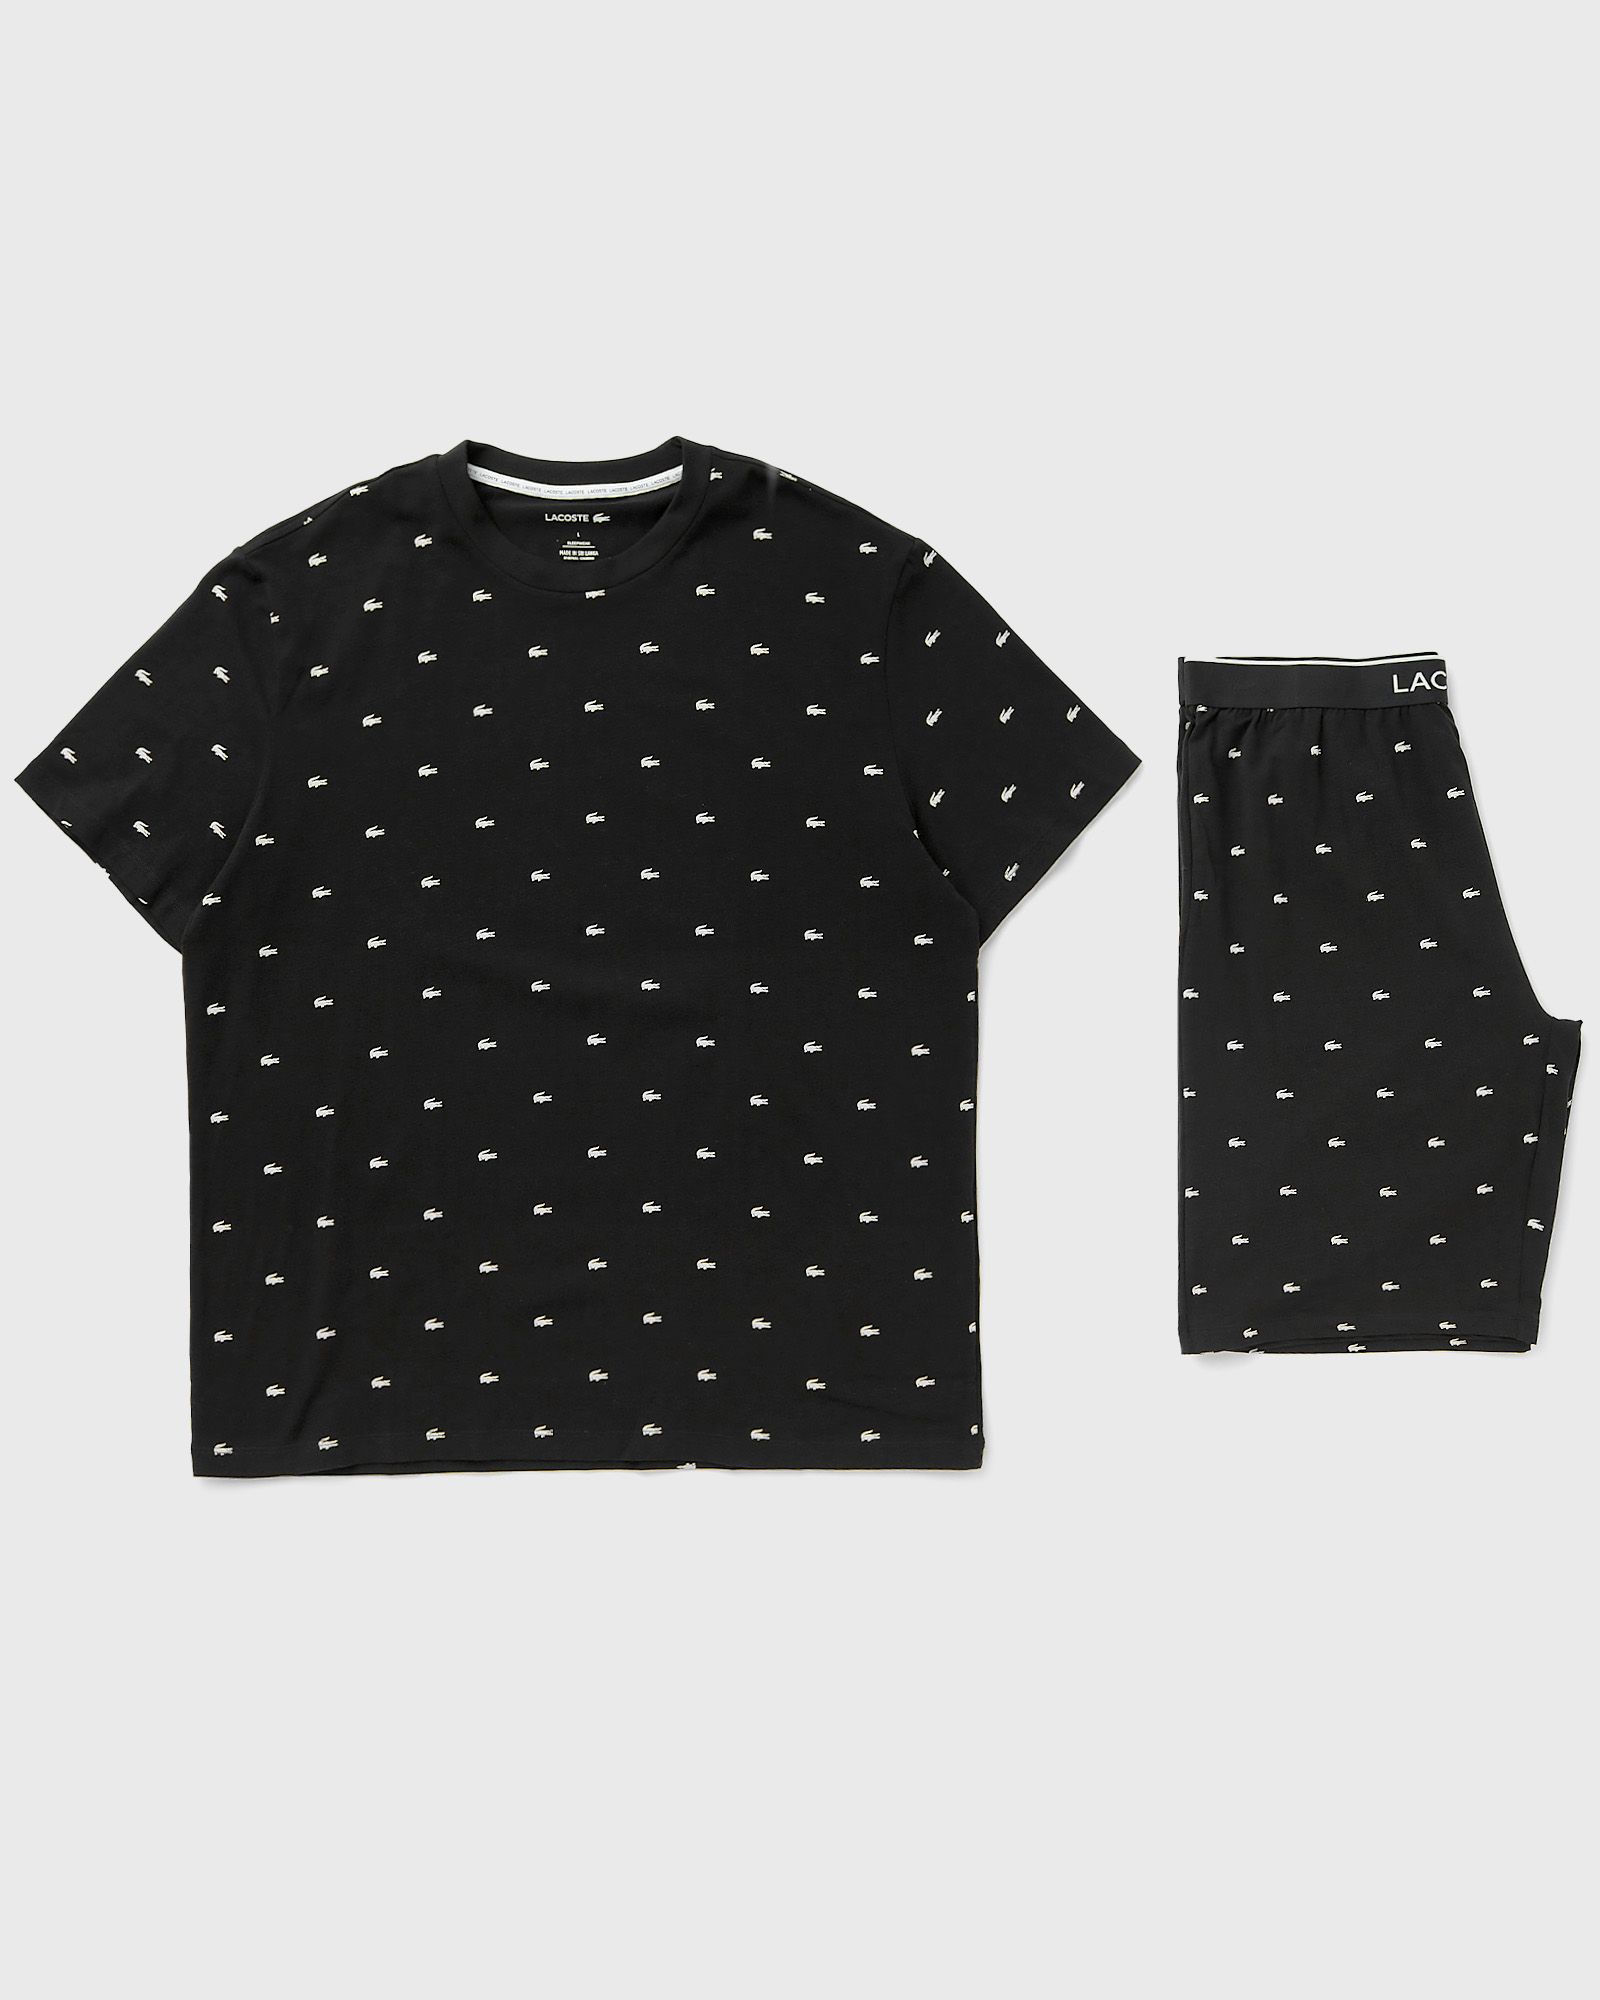 Lacoste LOUNGEWEAR PYJAMA SET men Sleep- & Loungewear black in Größe:XL von Lacoste